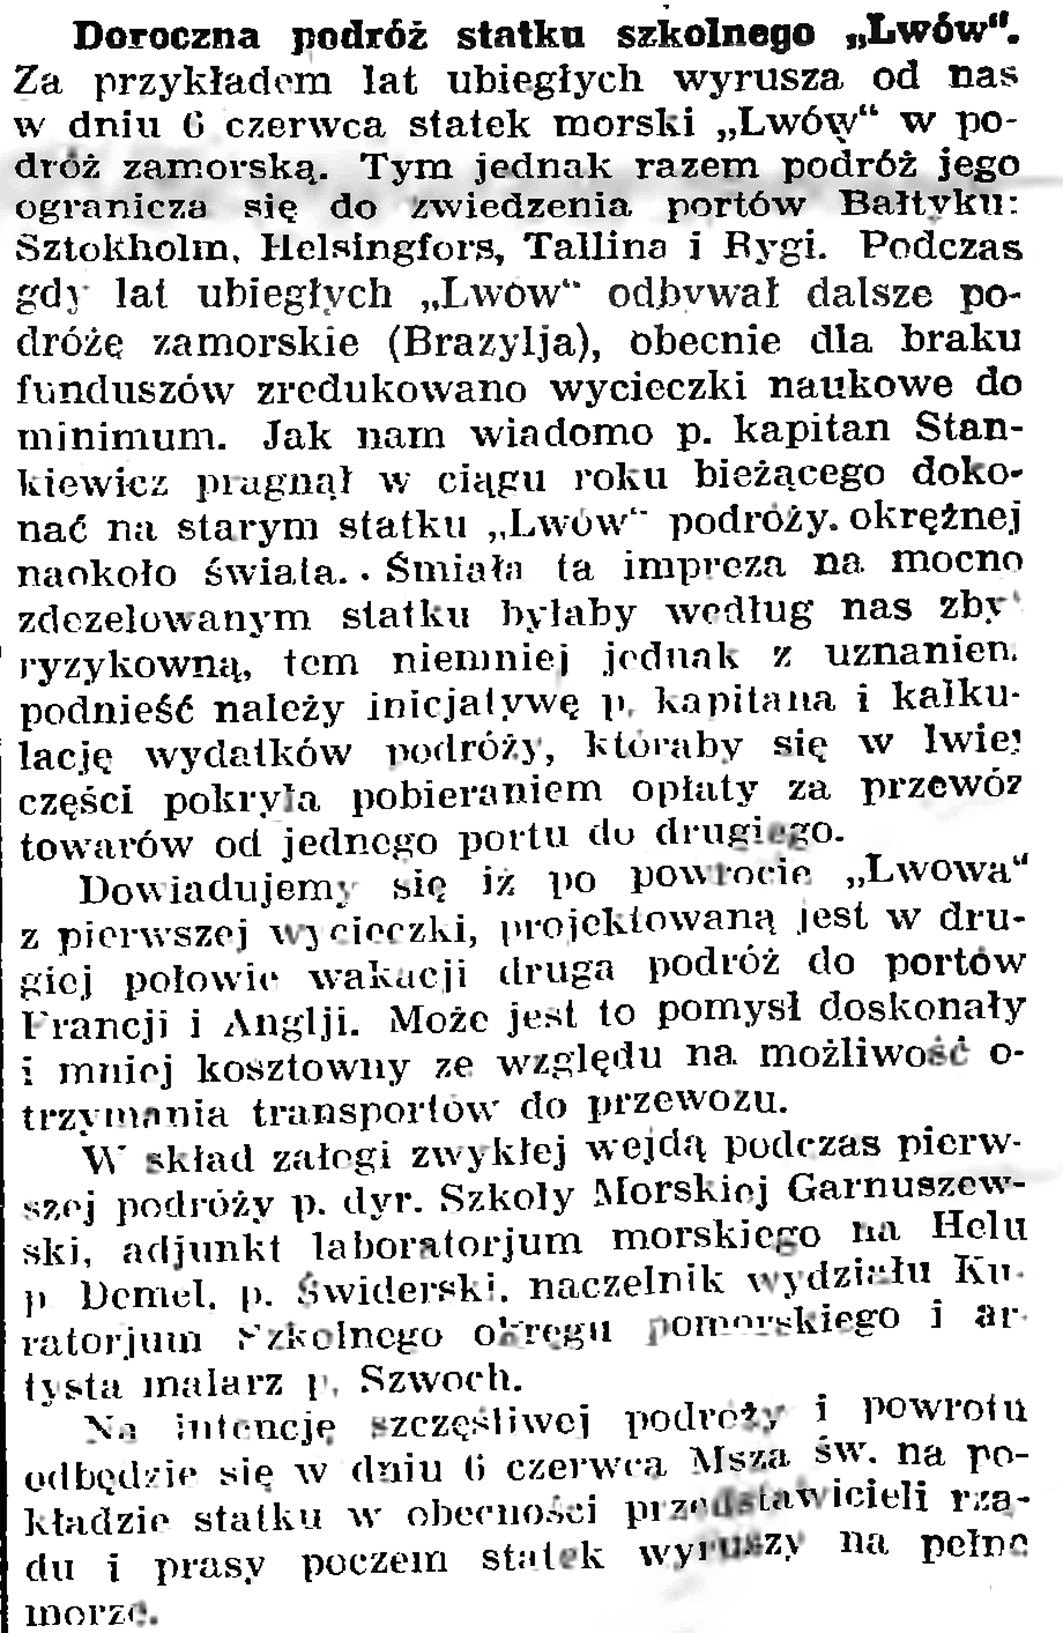 Doroczna podróż statku szkolnego "Lwów" // Gazeta Gdańska. - 1926, nr 125, s. 4